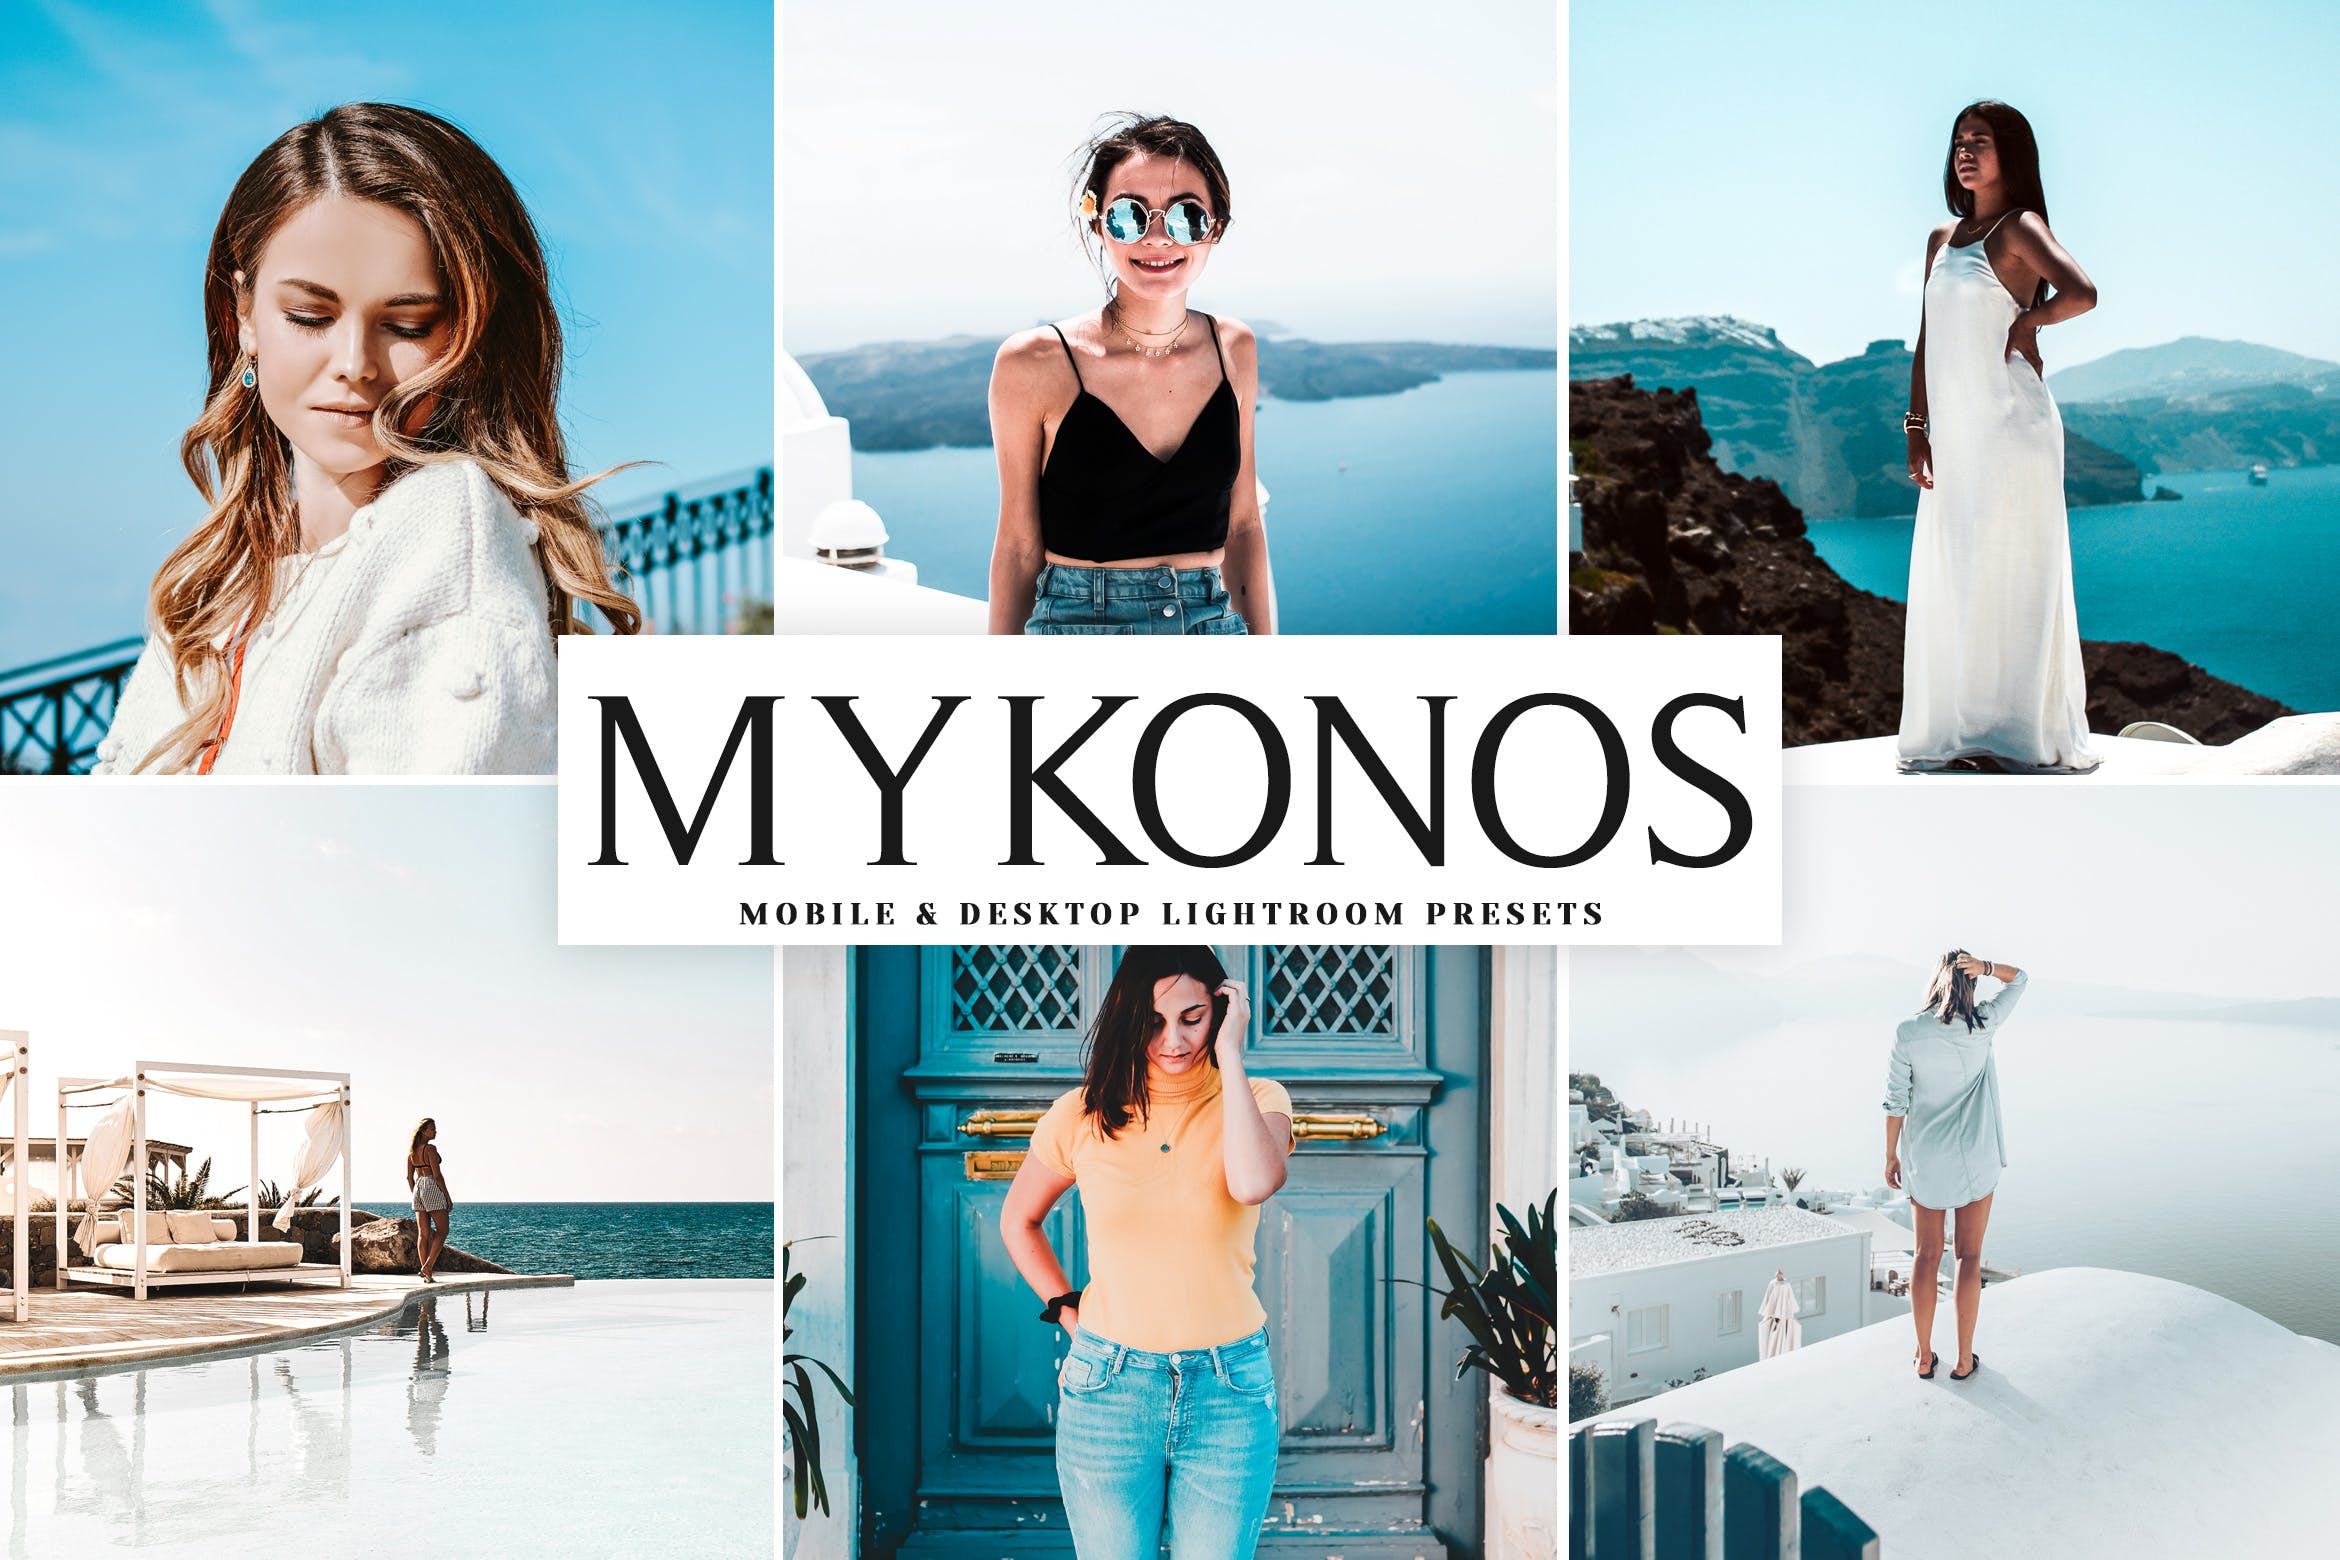 明亮色调风格肖像摄影大洋岛精选LR预设下载 Mykonos Mobile & Desktop Lightroom Presets插图